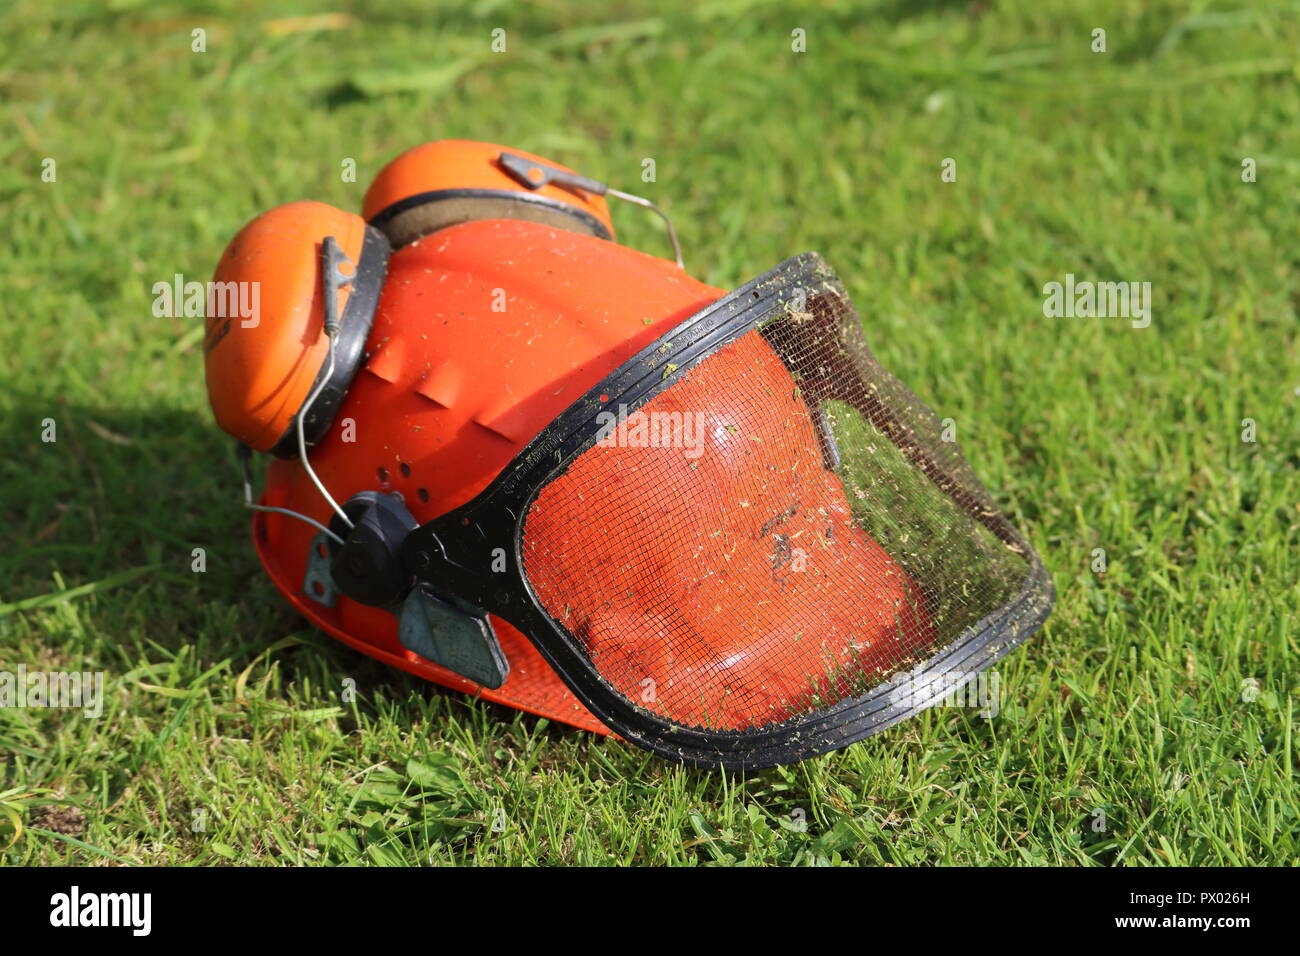 Orange Helm hut mit Gehörschutz, Protektoren, mesh Visor, Gras Hintergrund schneiden. Für strimming, Gartenbau, Gras auf Helm, rechte Seite Stockfoto